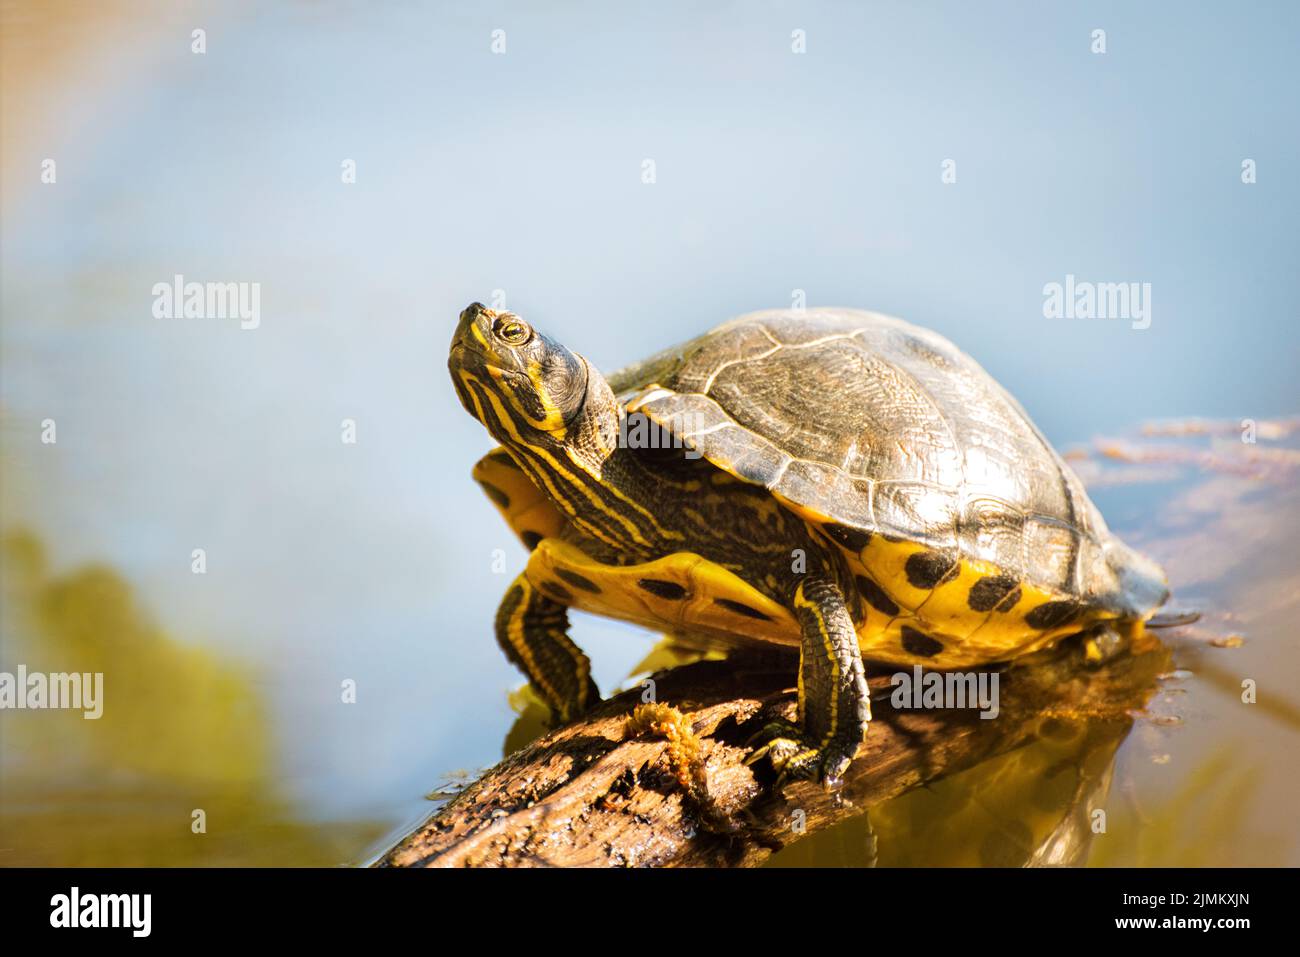 Una tortuga pintada recibe un poco de sol en un registro en un lago Foto de stock